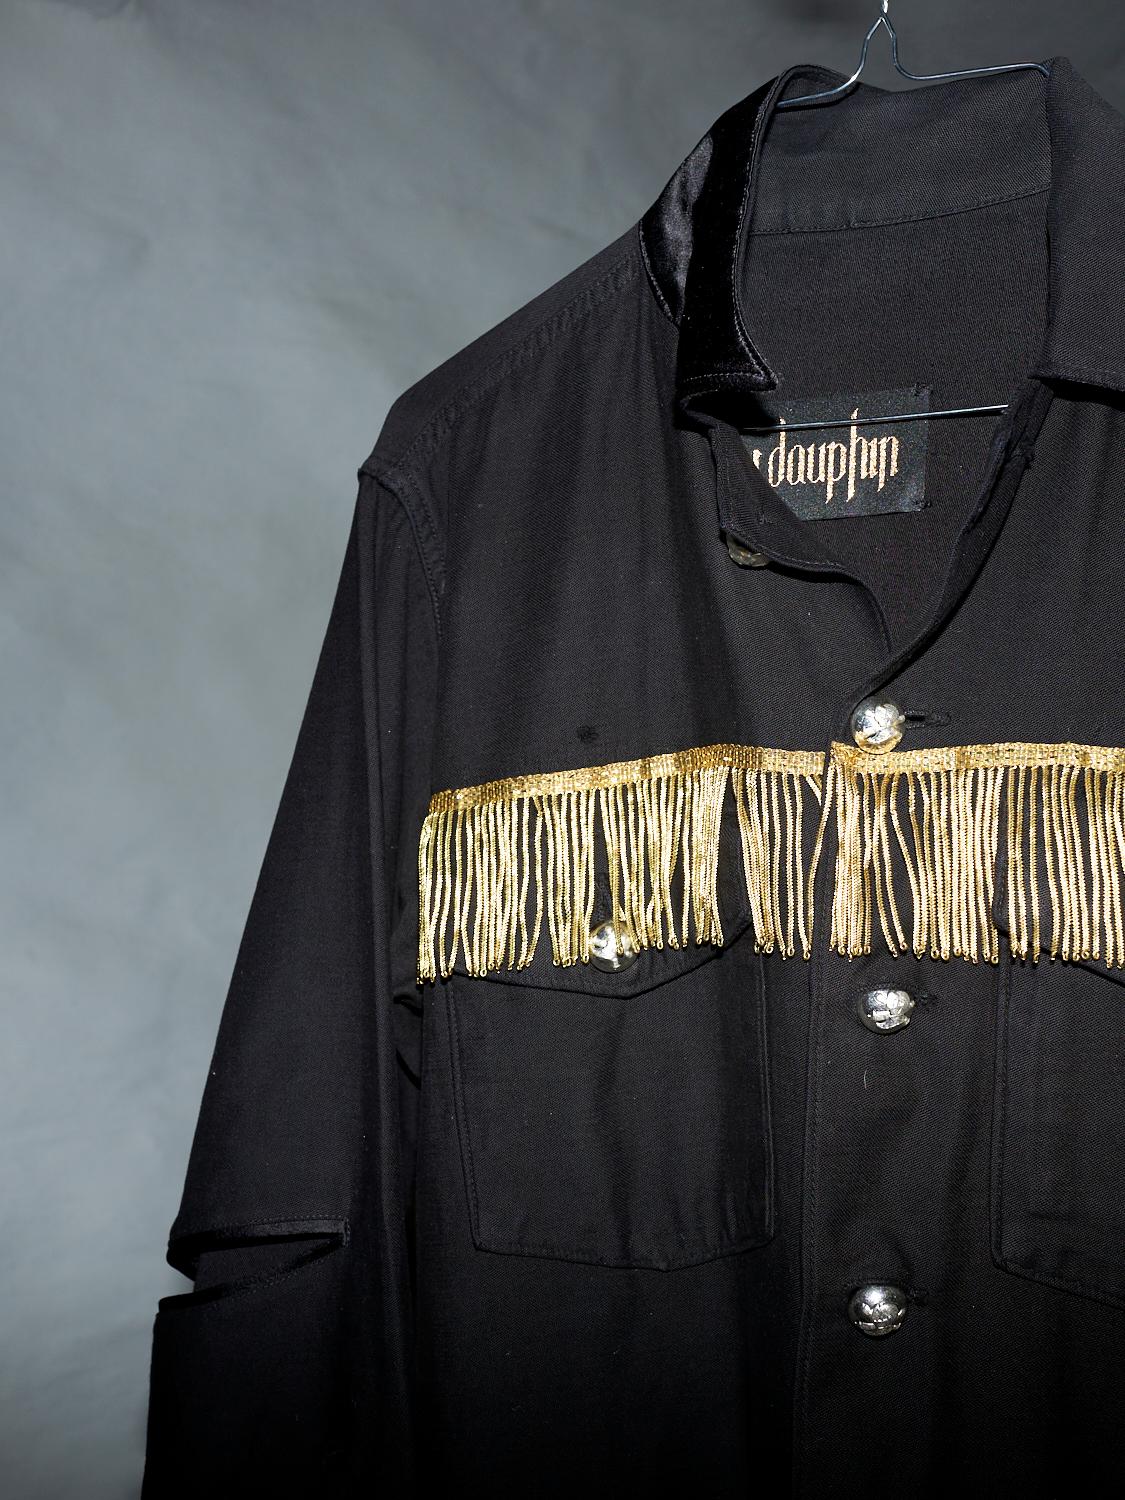 Embellished Fringe Jacket Black Silver Buttons Military Shirt J Dauphin 6